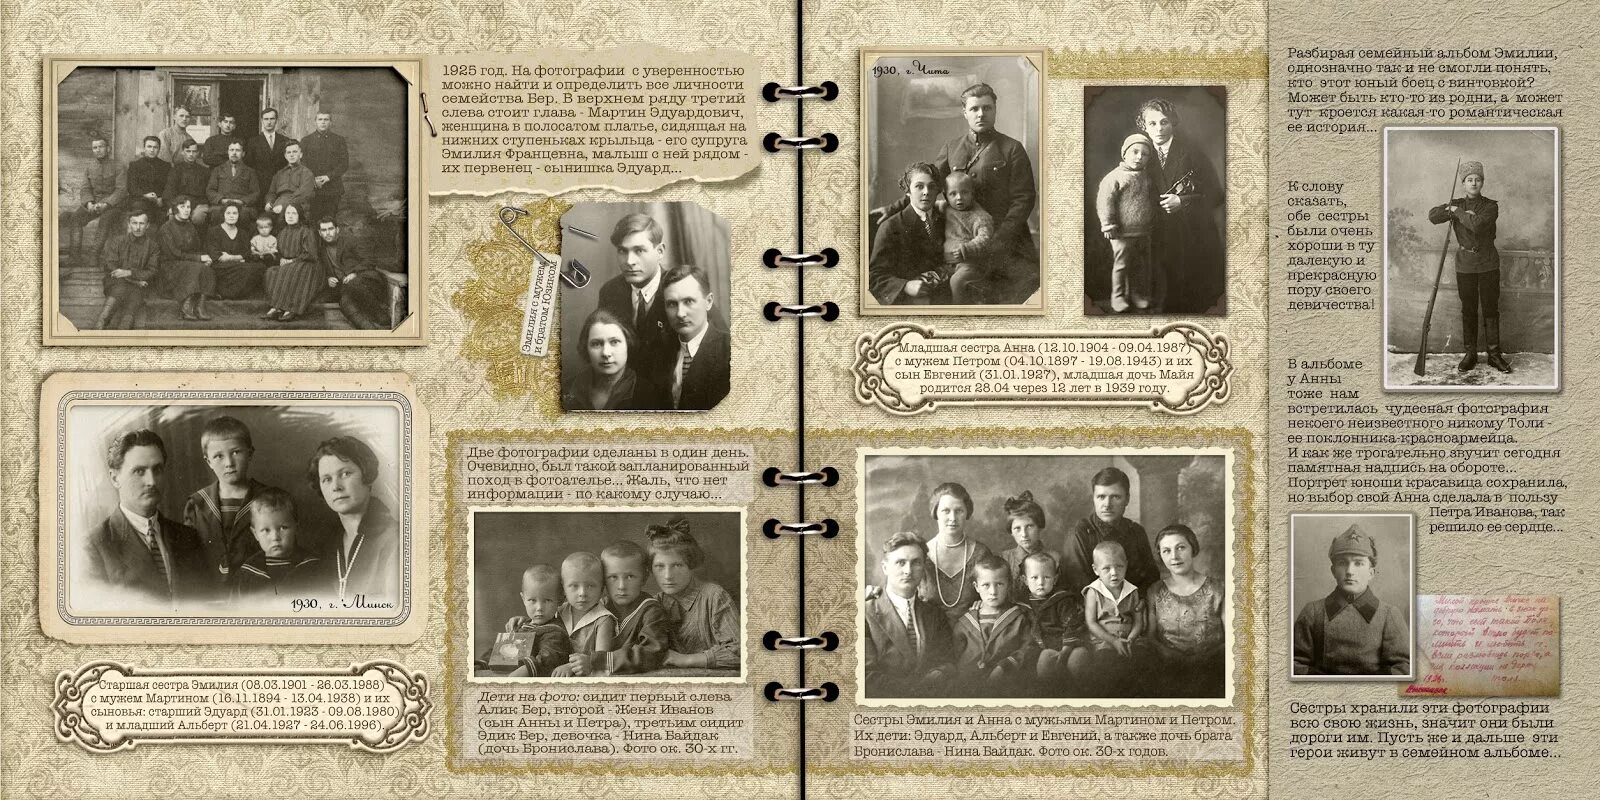 Образец семейного альбома. Оформление семейной книги. Семейный альбом с историей. Пример оформления родословной книги. Образцы листов для родословной книги.